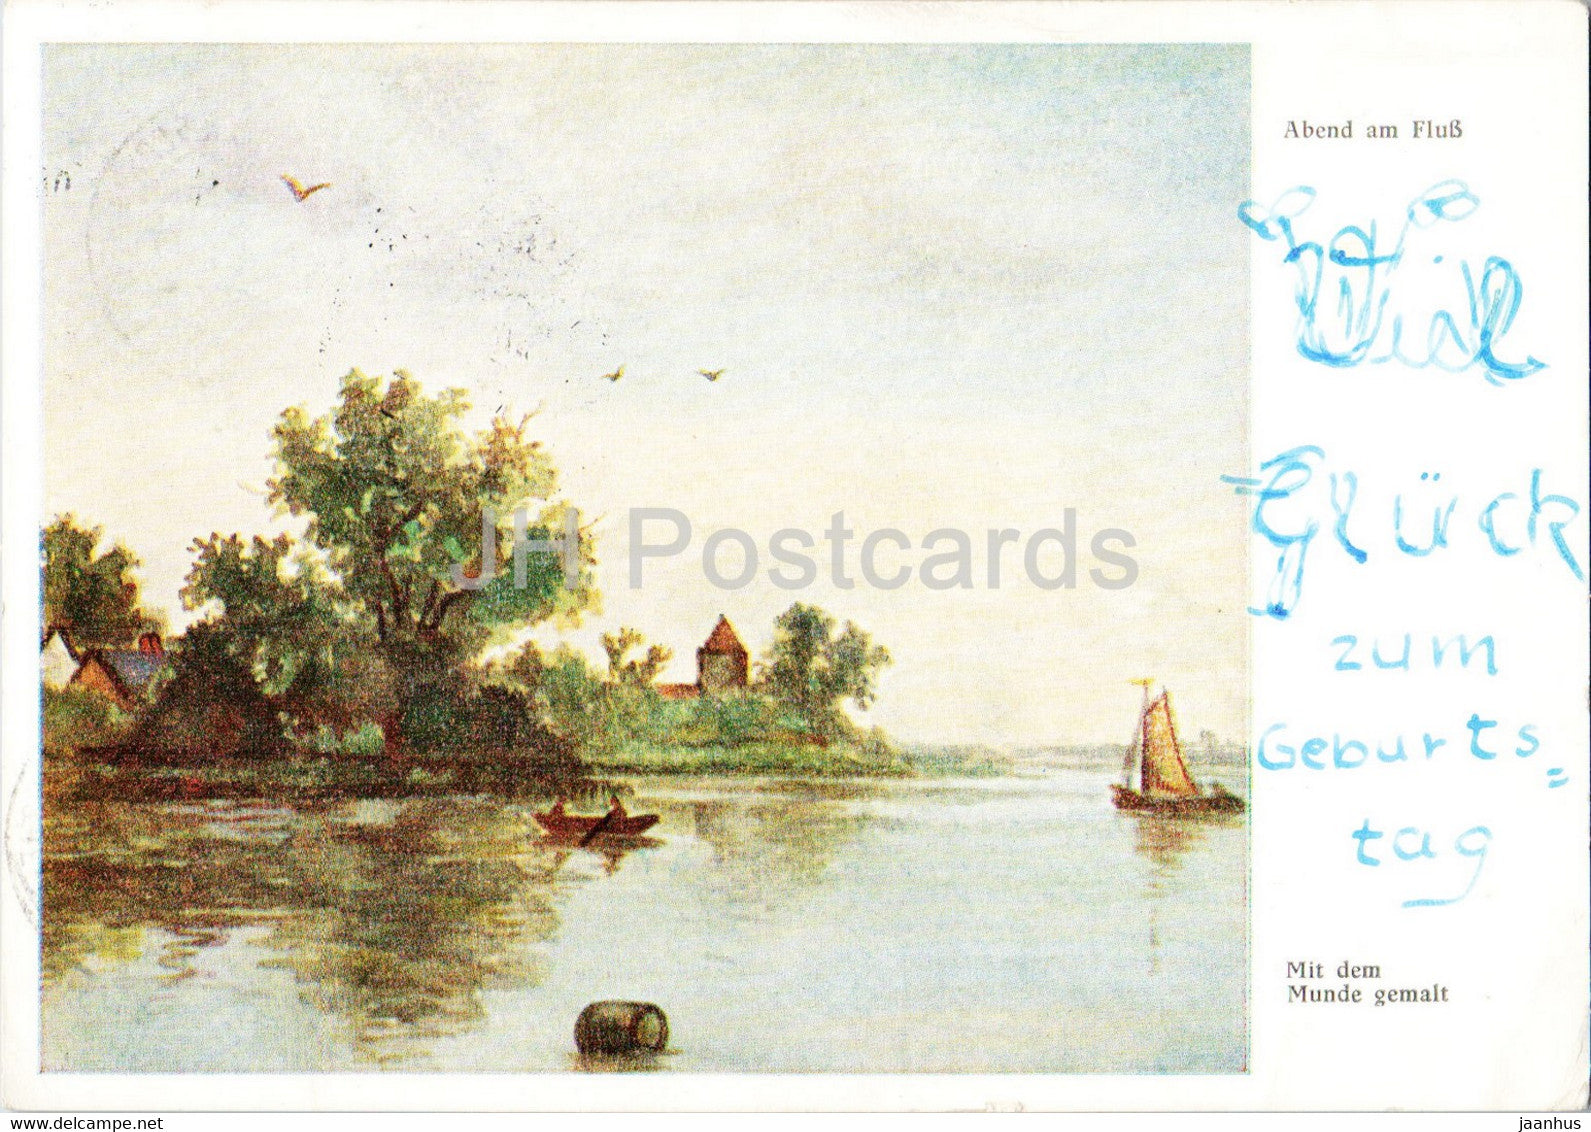 painting - Abend am Fluss - Kunst der Mund und Fuss Schaffenden - old postcard - German art - Germany - used - JH Postcards